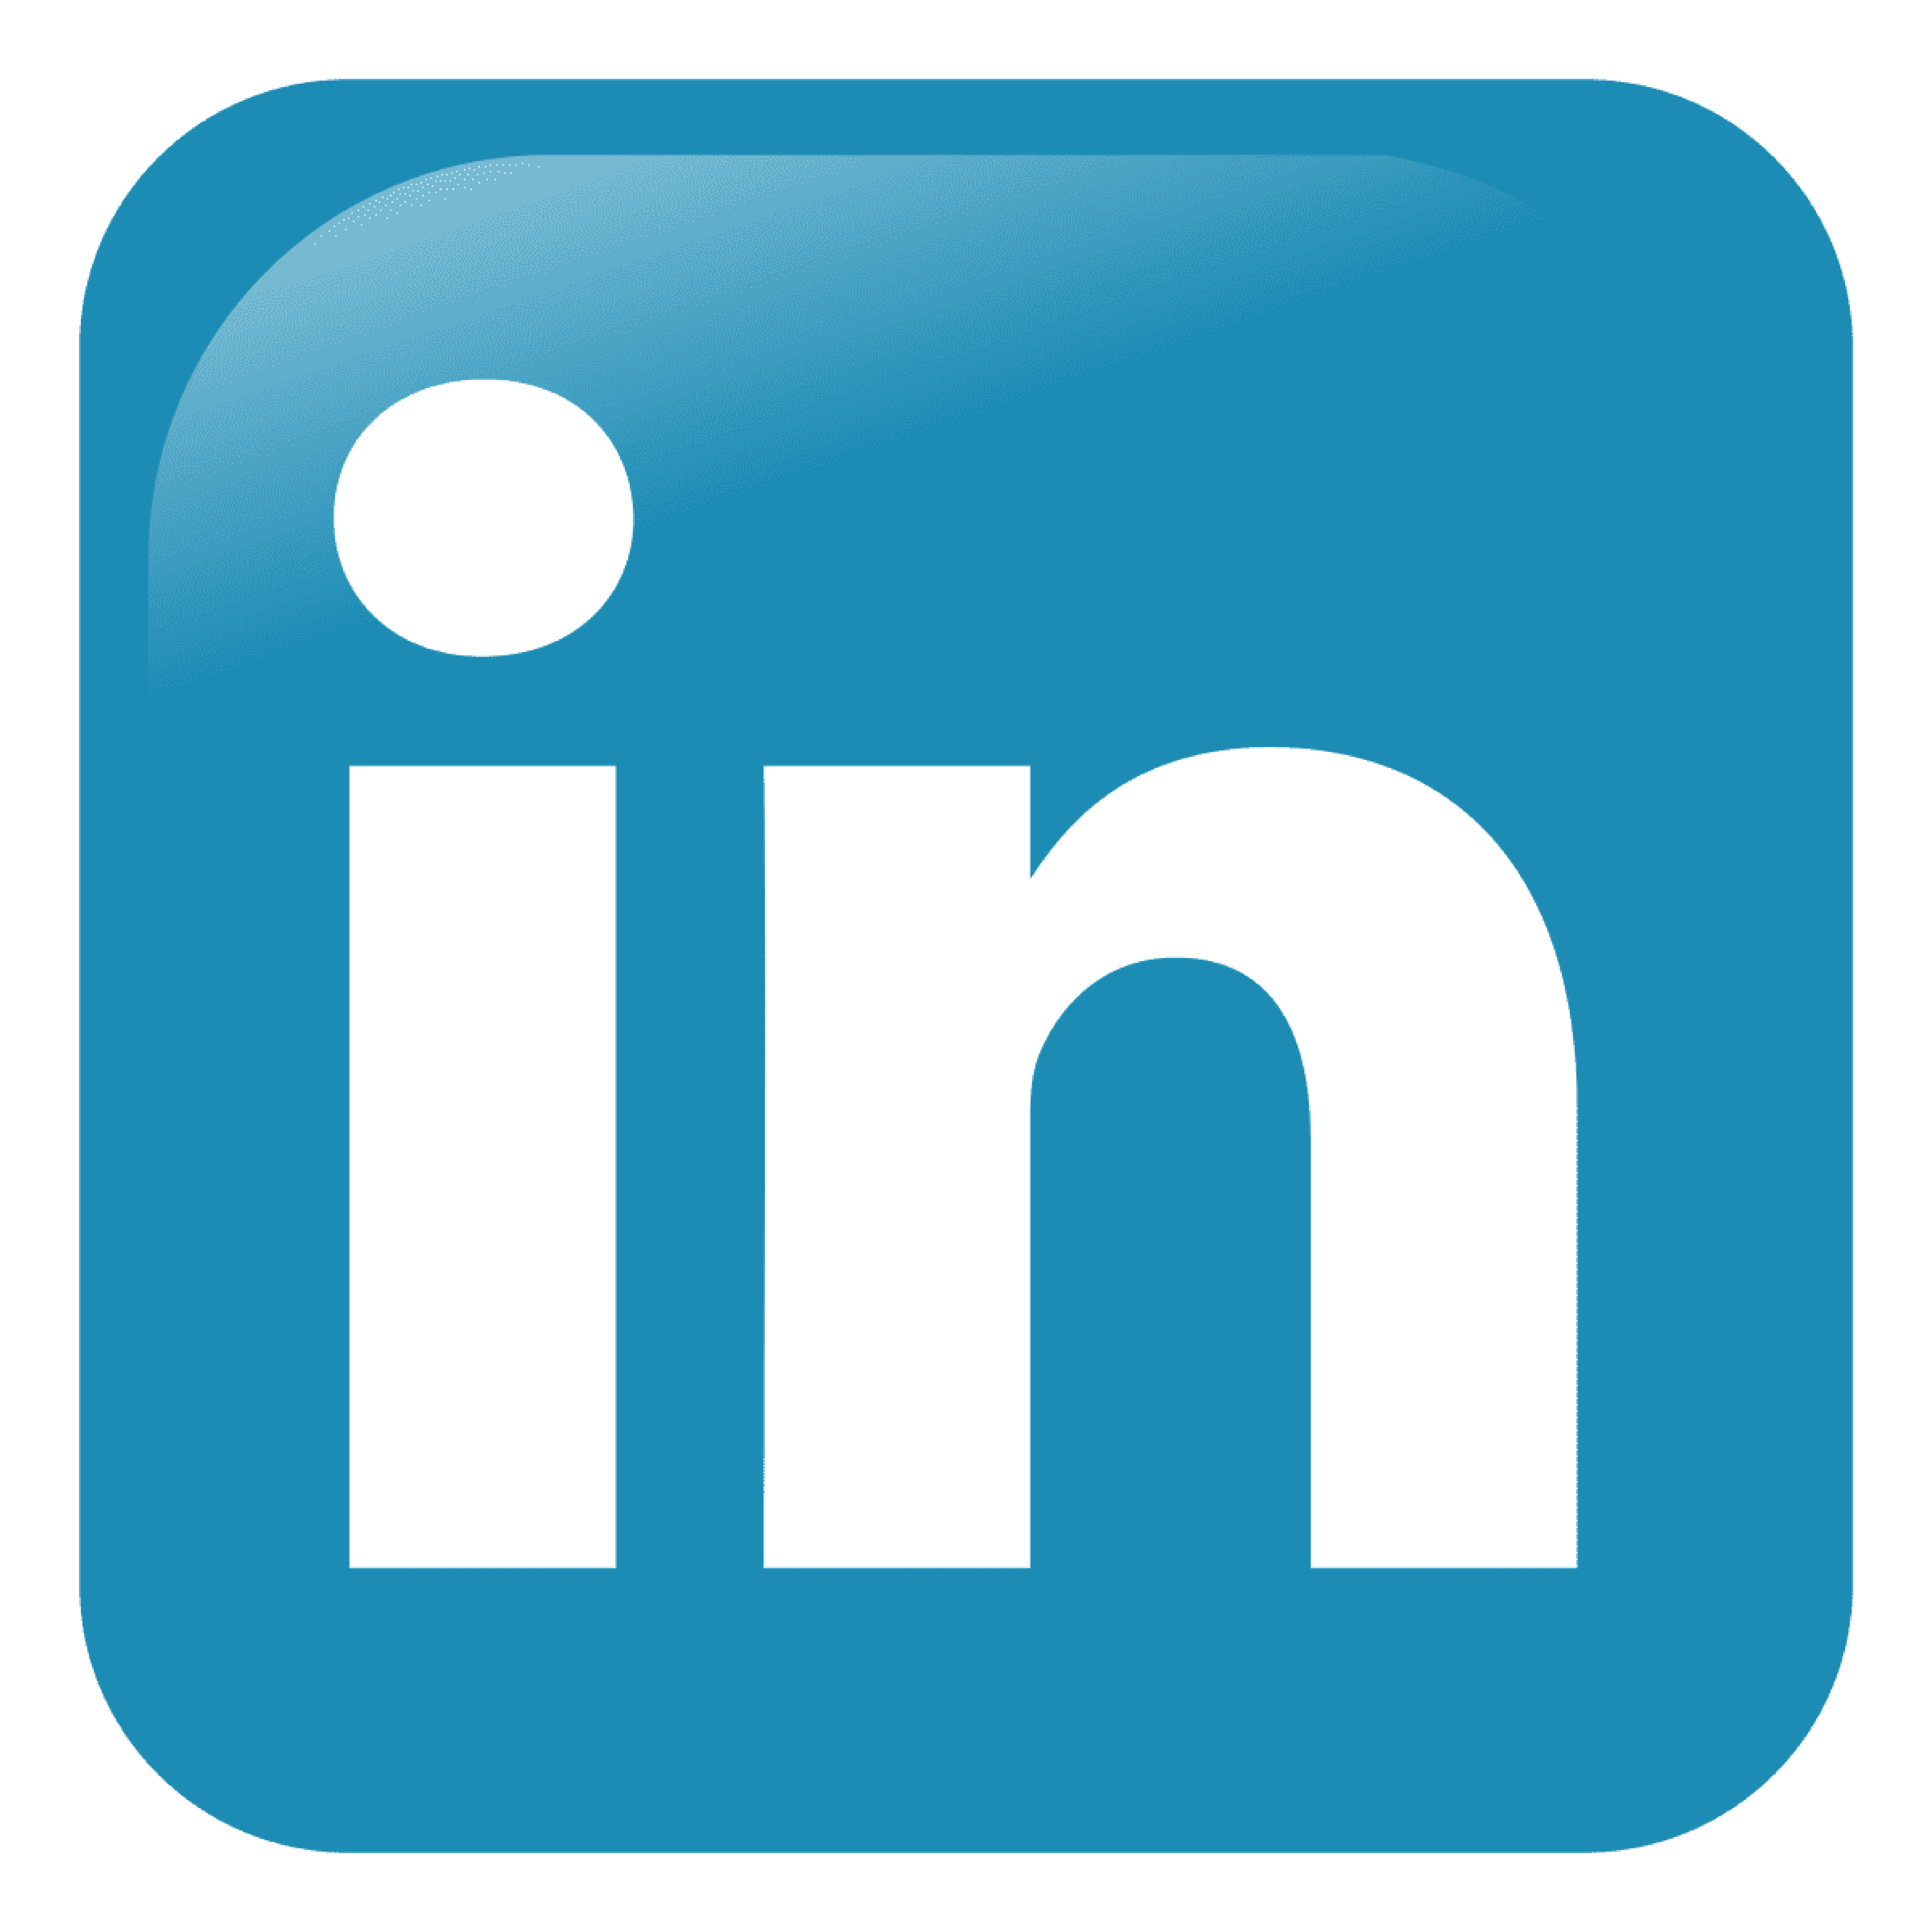 GenTech Associates LinkedIN Page